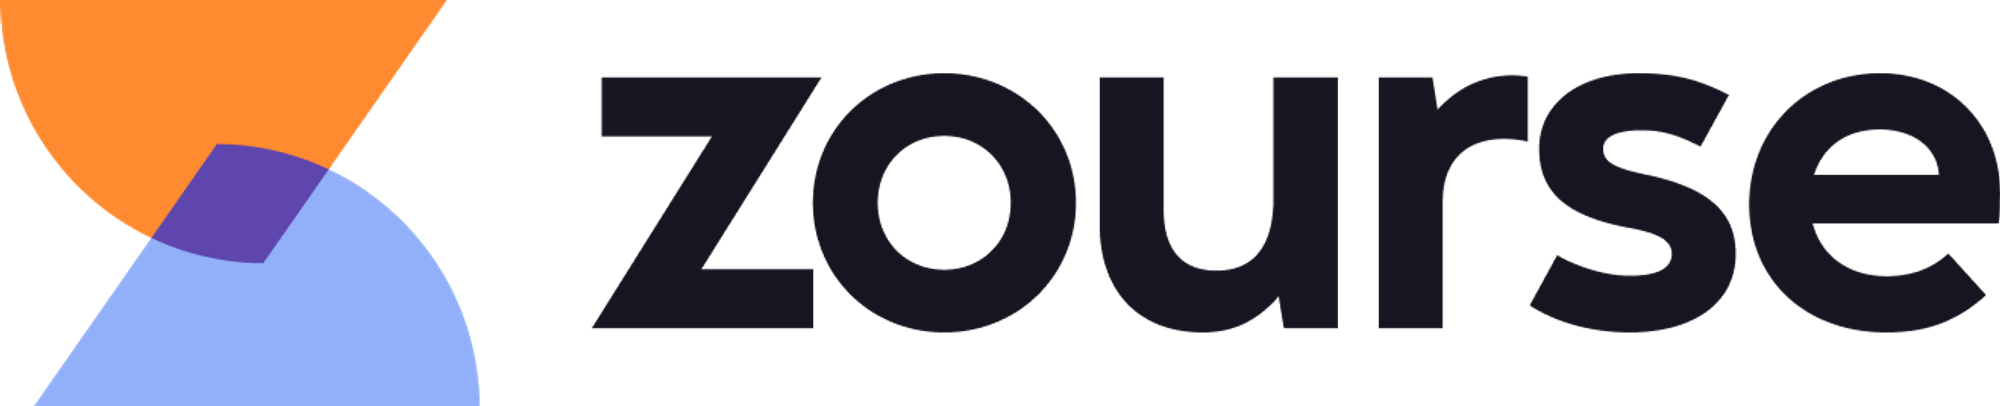 Modern logo design for zourse.com